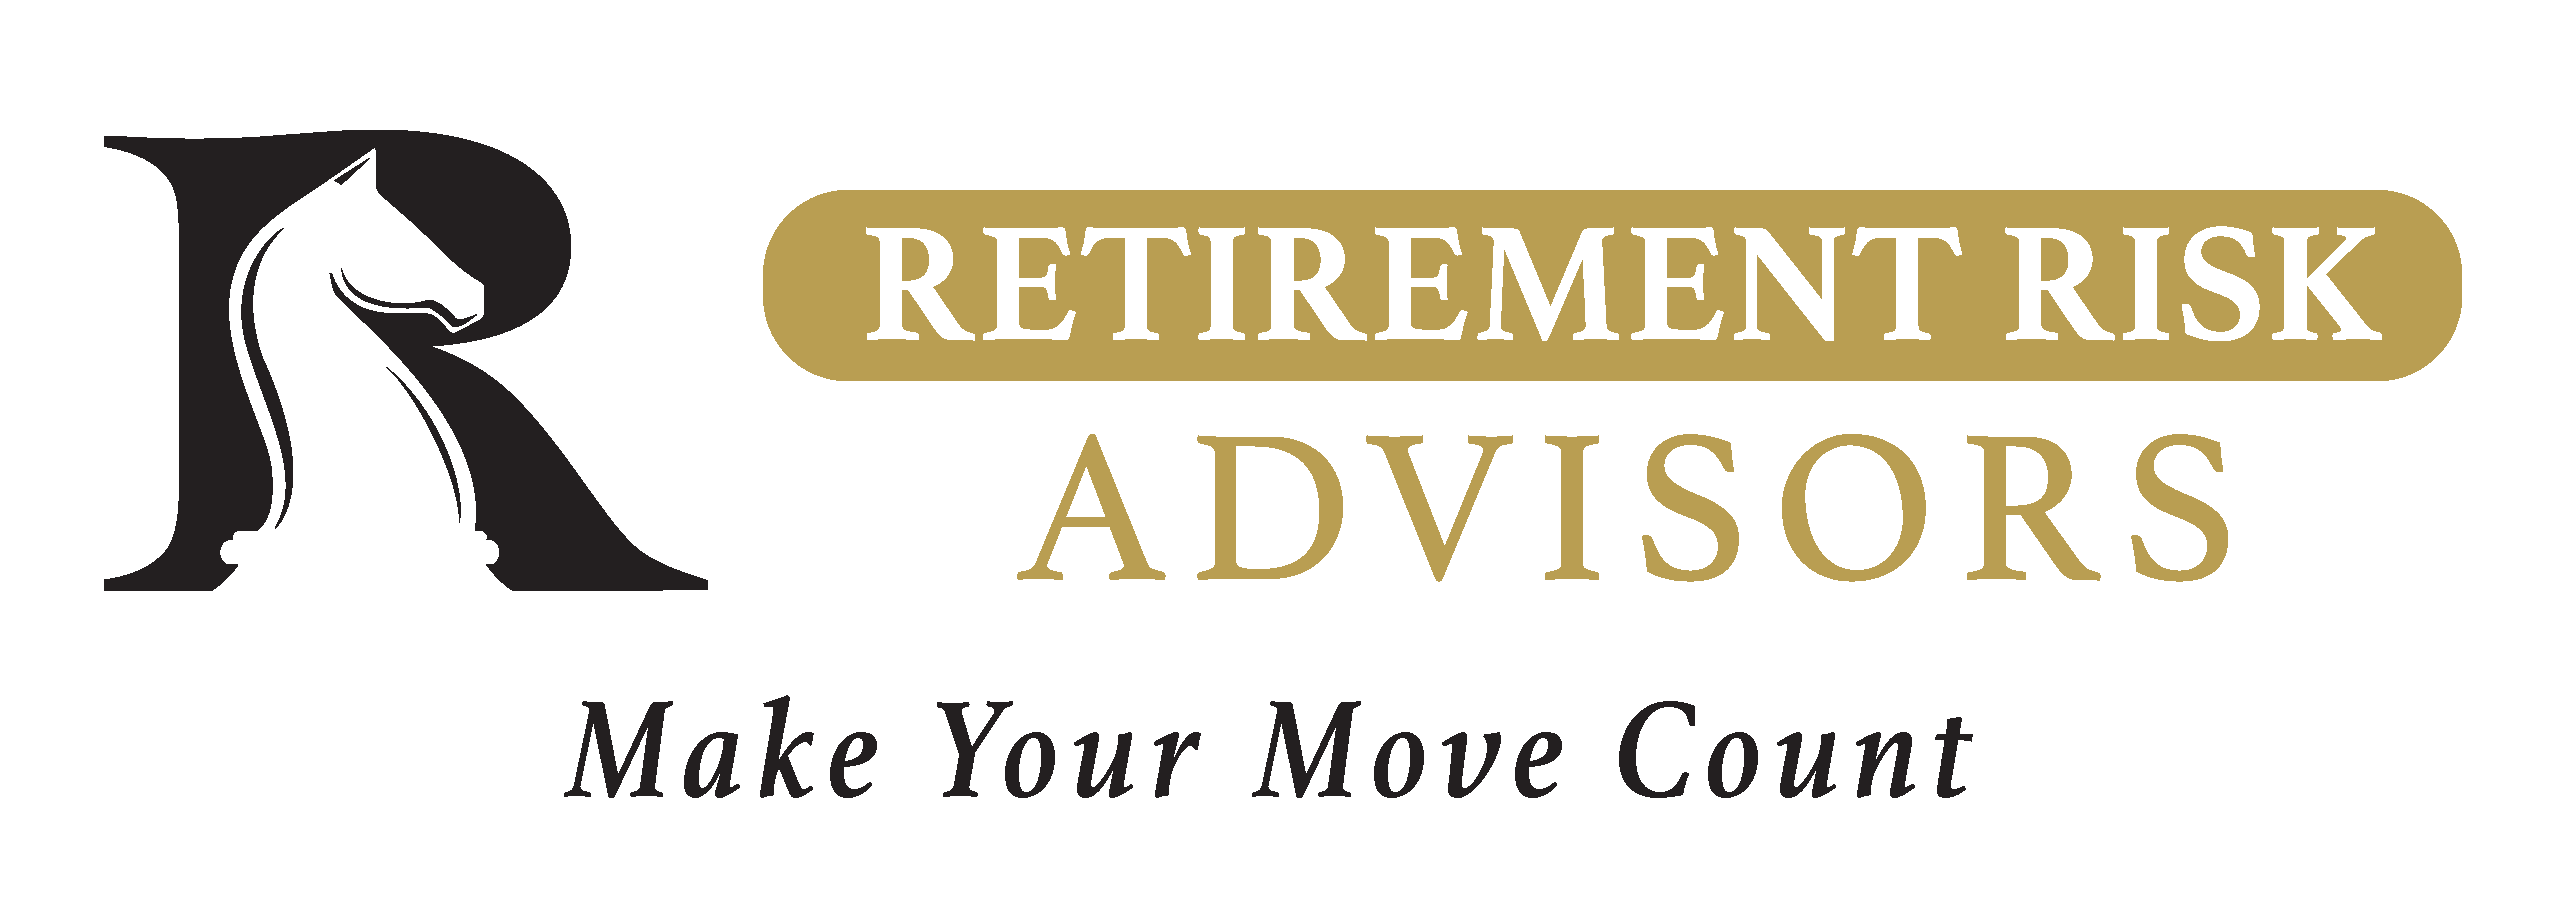 Retirement Risk Advisors